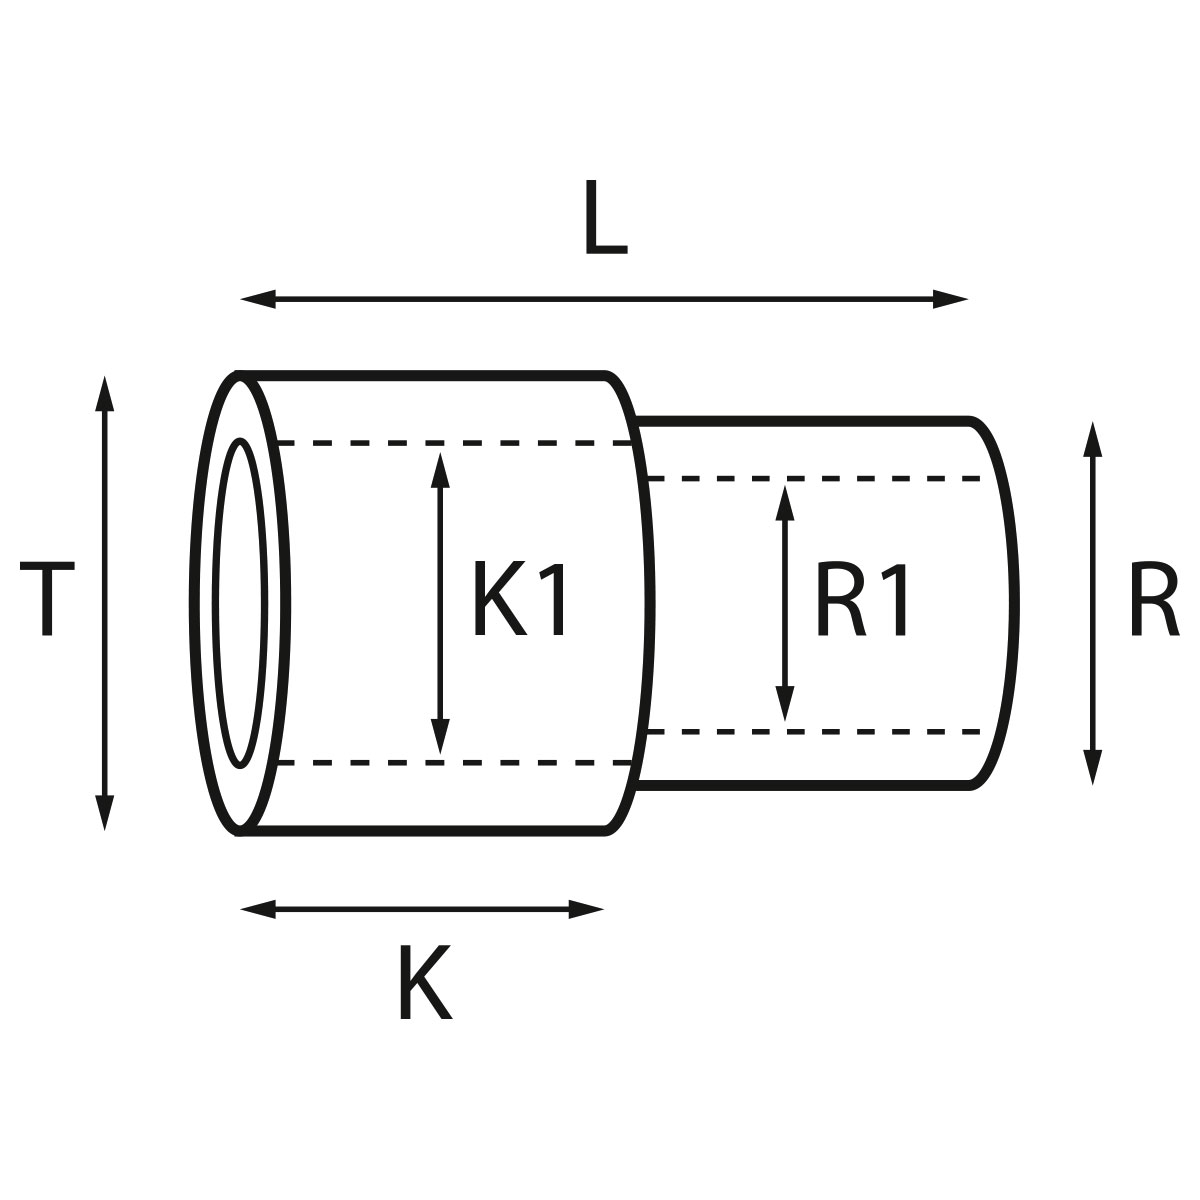 Gehäusetube Typ AS 13827, Tubus Ø 2,5 mm, Gesamtlänge 3,55 mm, für wasserdichte Kronen